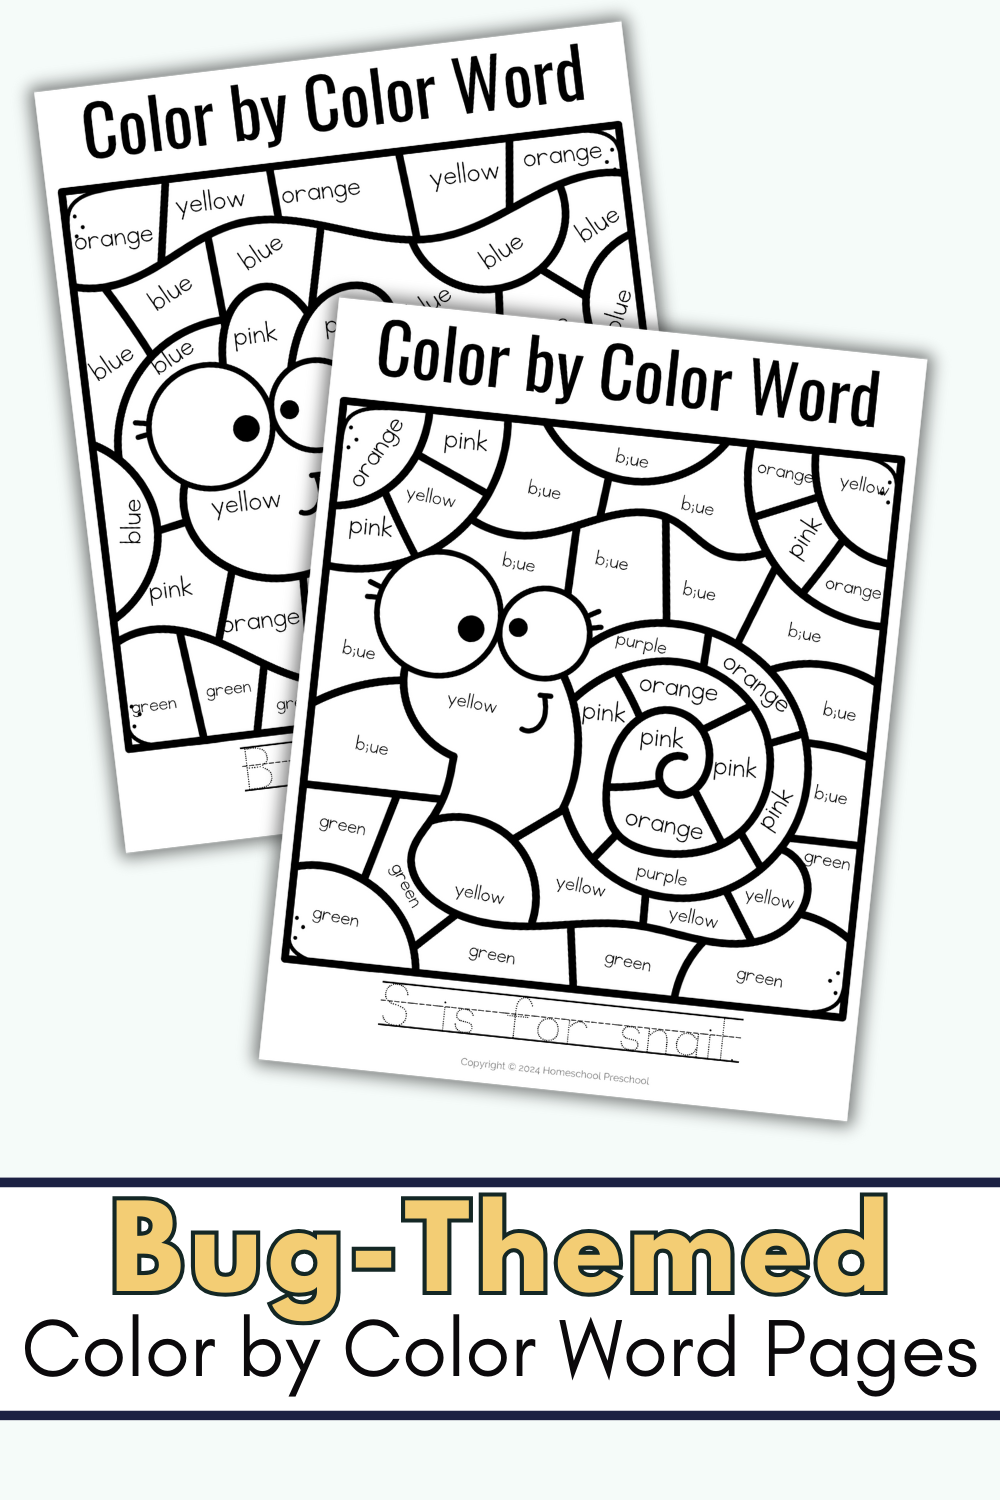 bugs-for-kindergarten Color by Color Words Worksheets